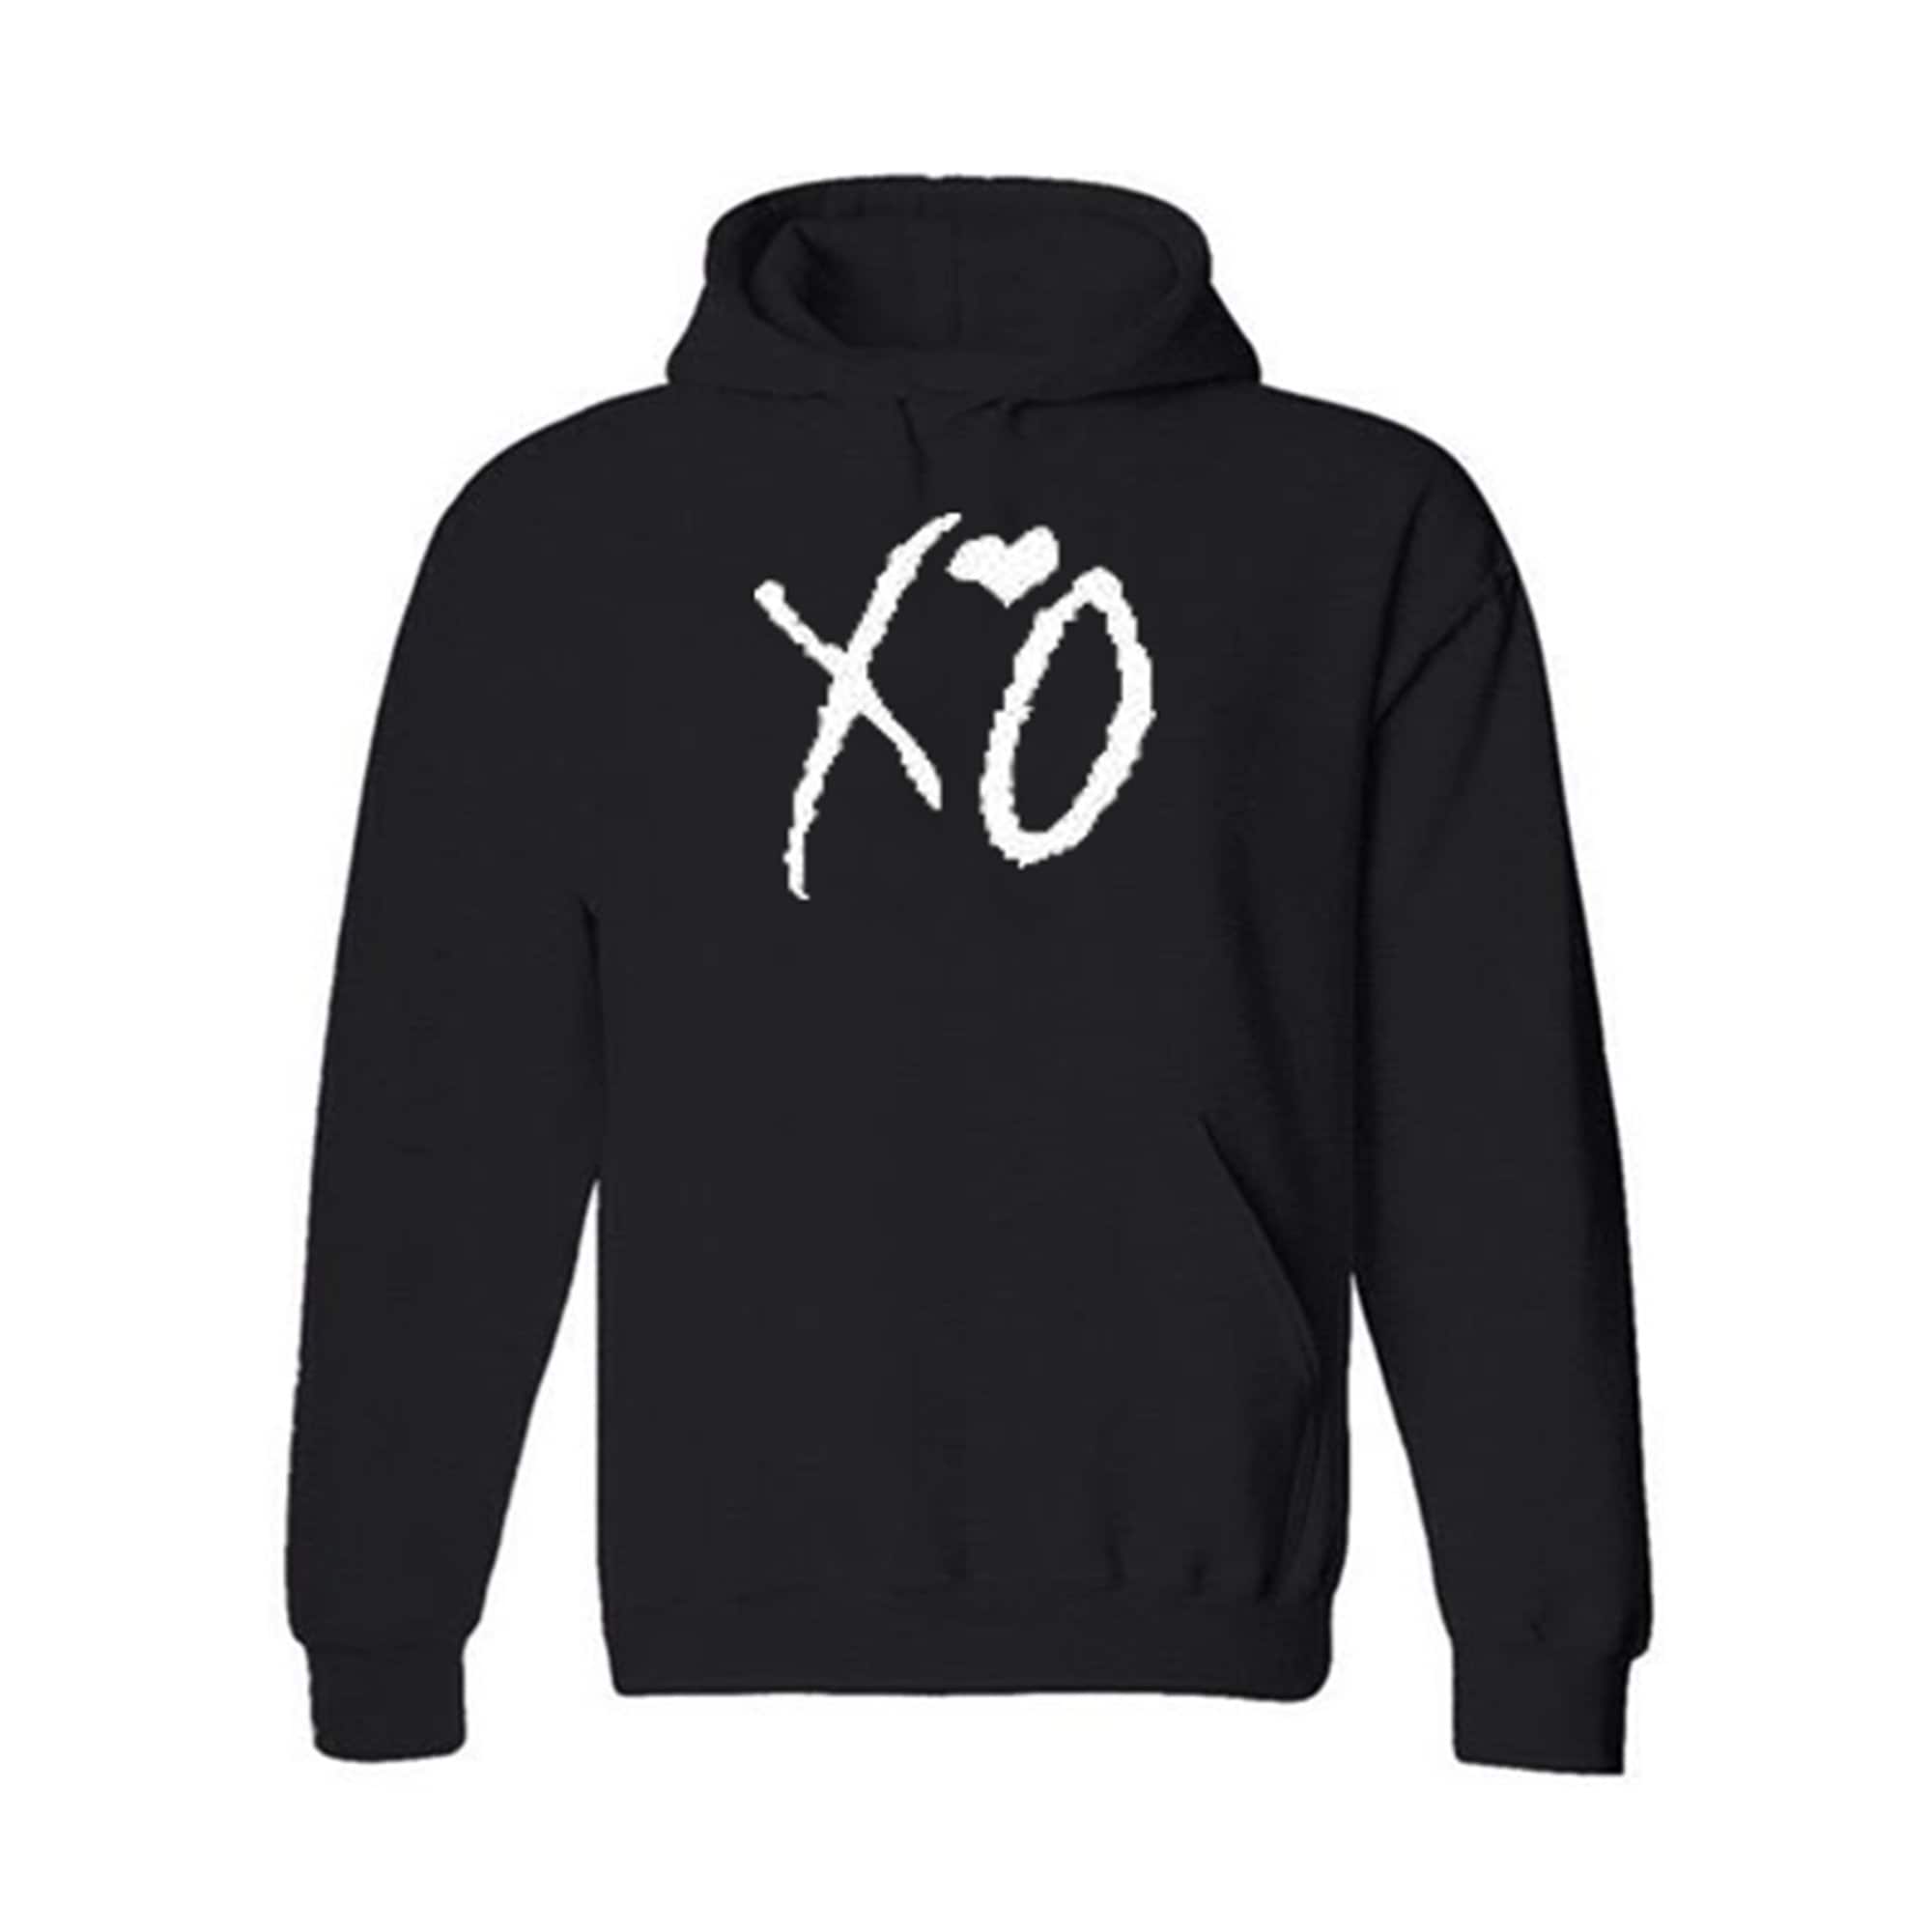 XO Adult Hoodies/Sweatshirts | Etsy